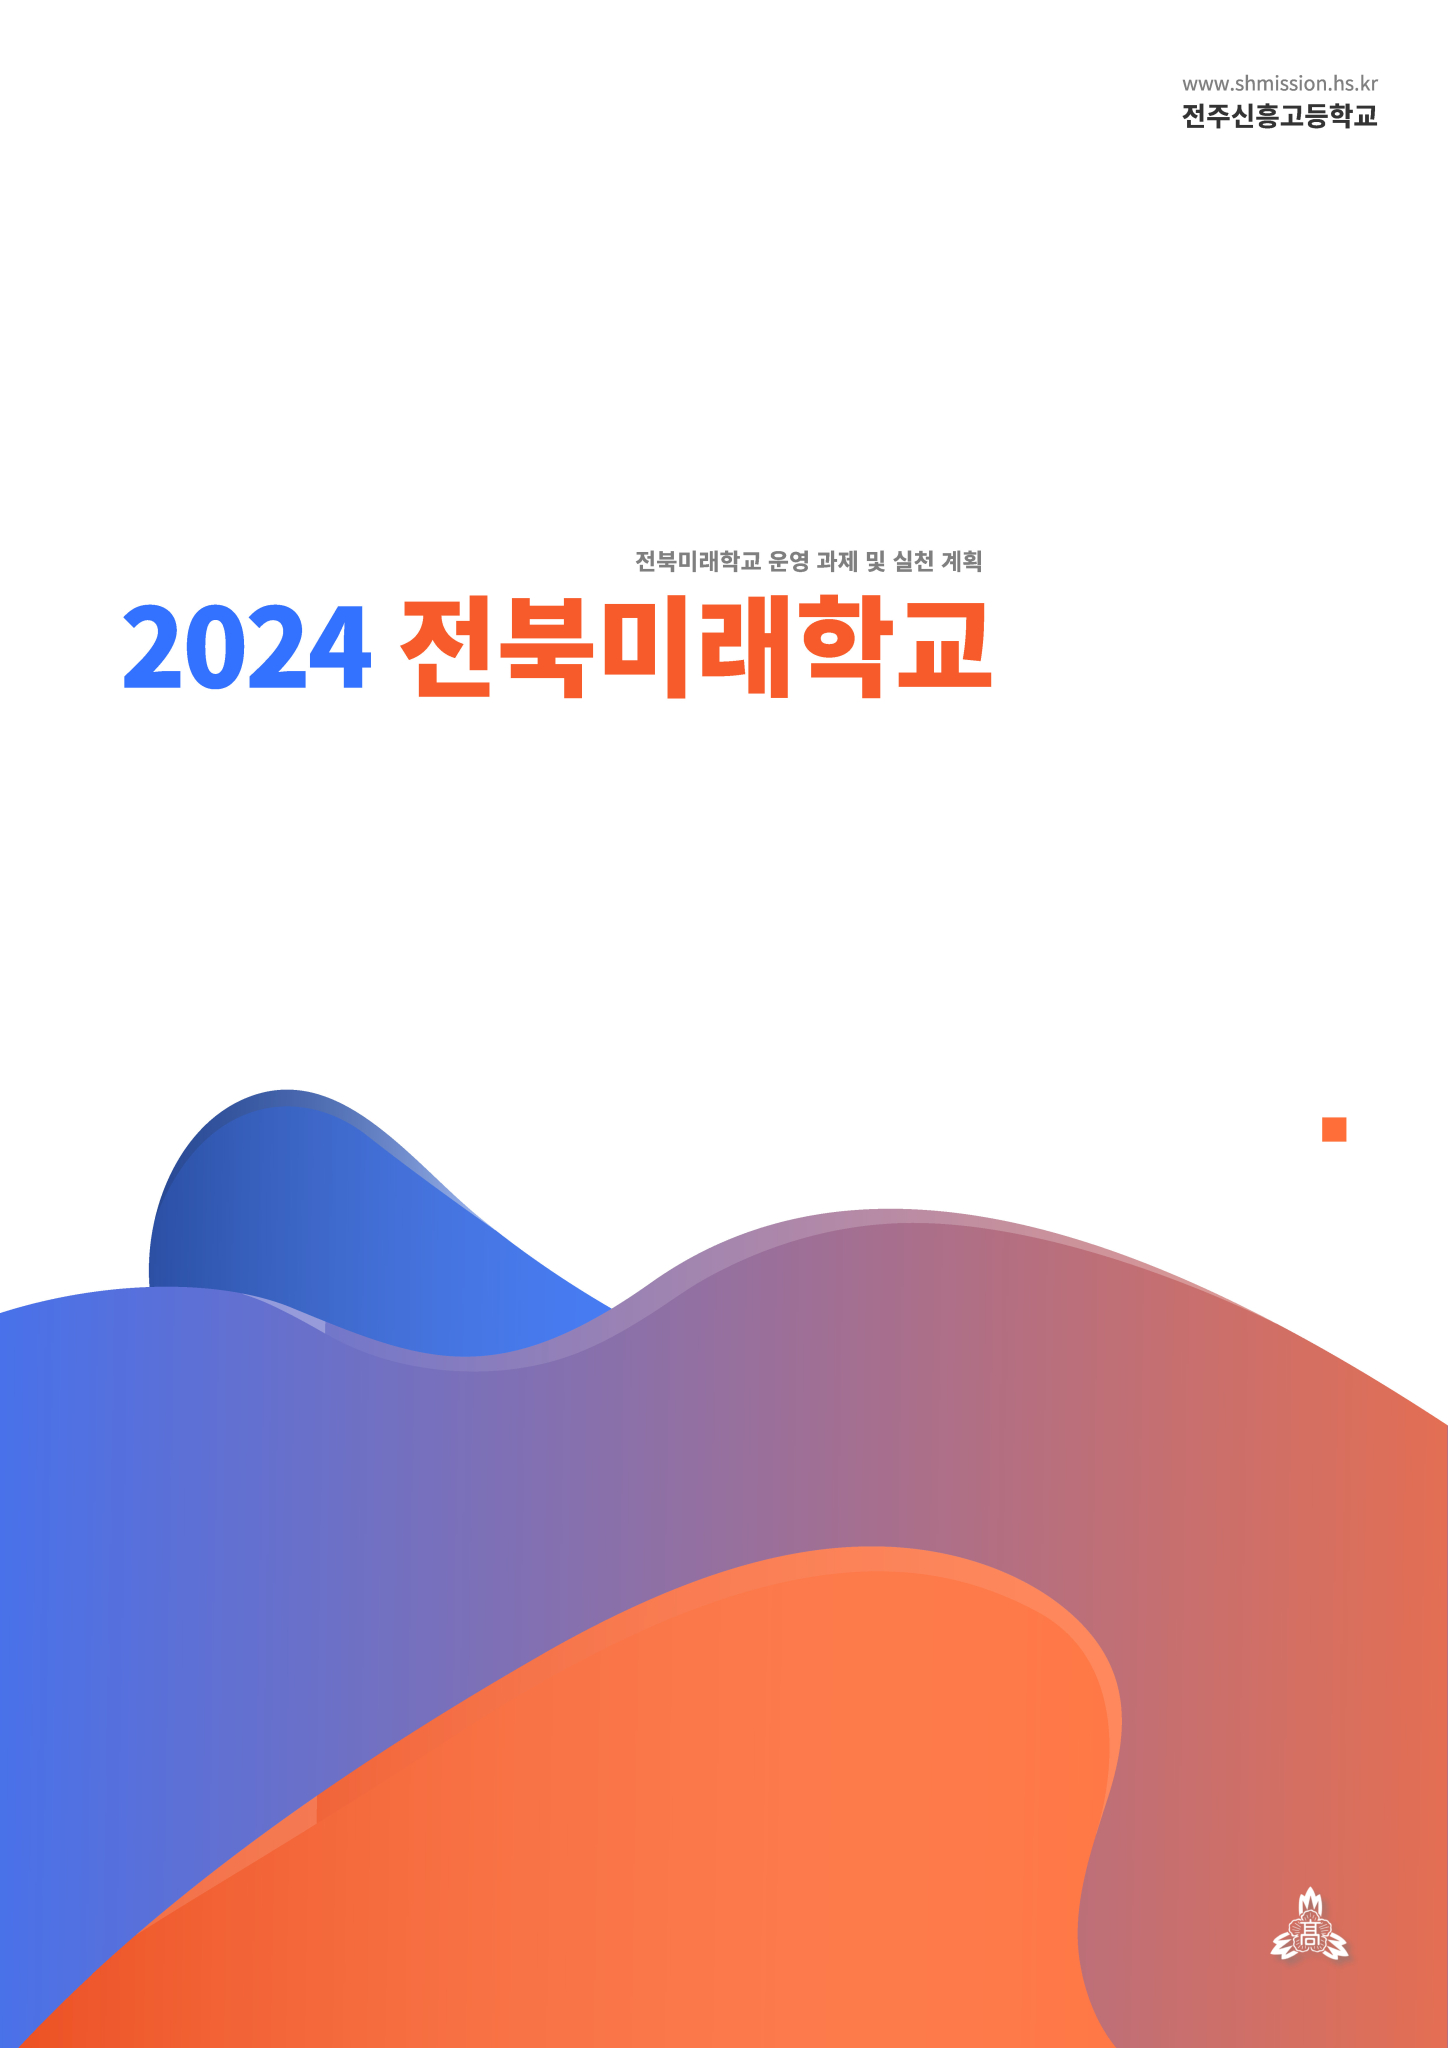 2024 미래학교_전주신흥고등학교_페이지_01